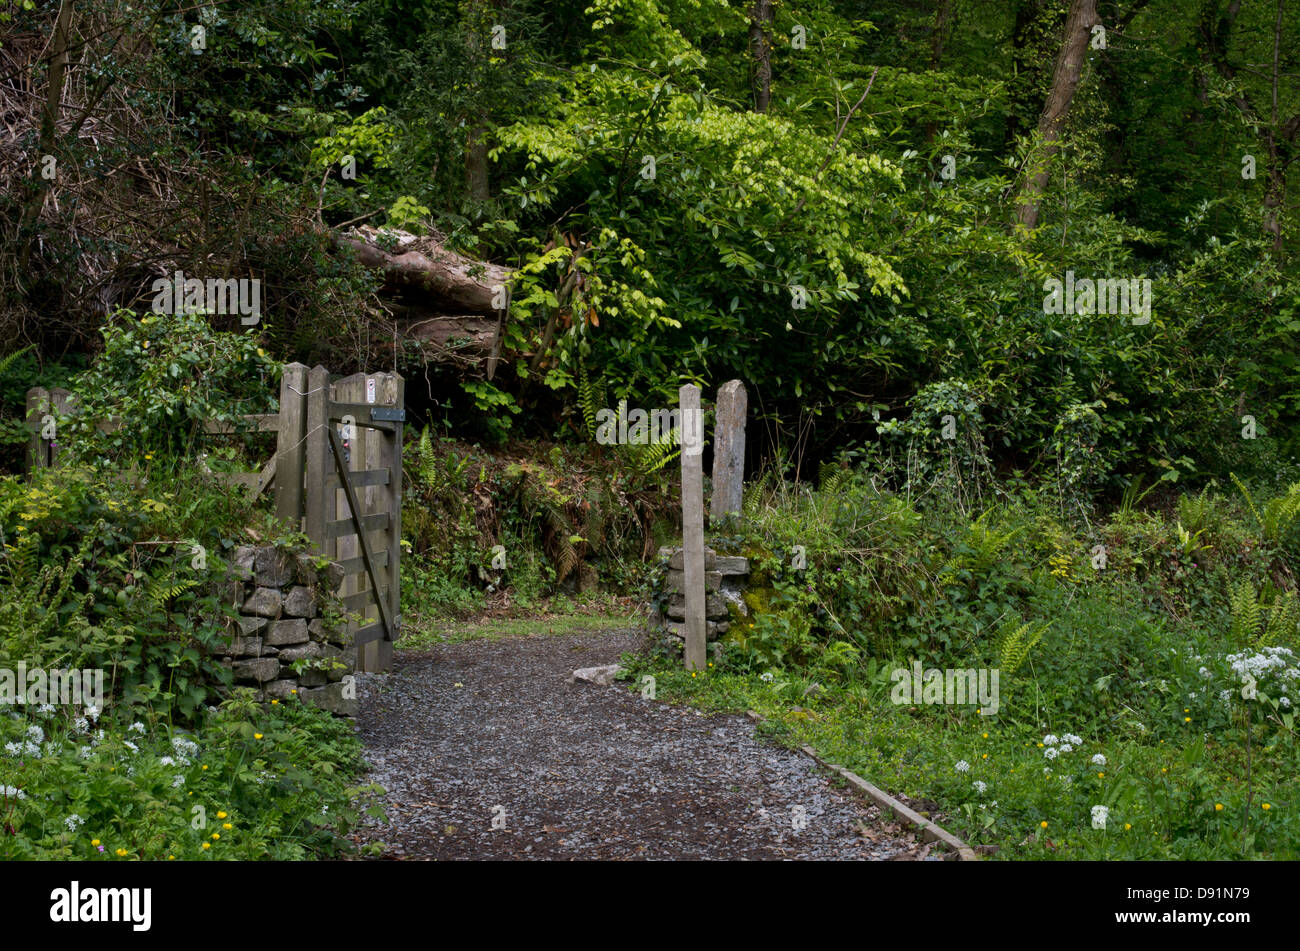 Un chemin entre forêt à Aberlleiniog, Anglesey, menant à un château normand restauré Banque D'Images